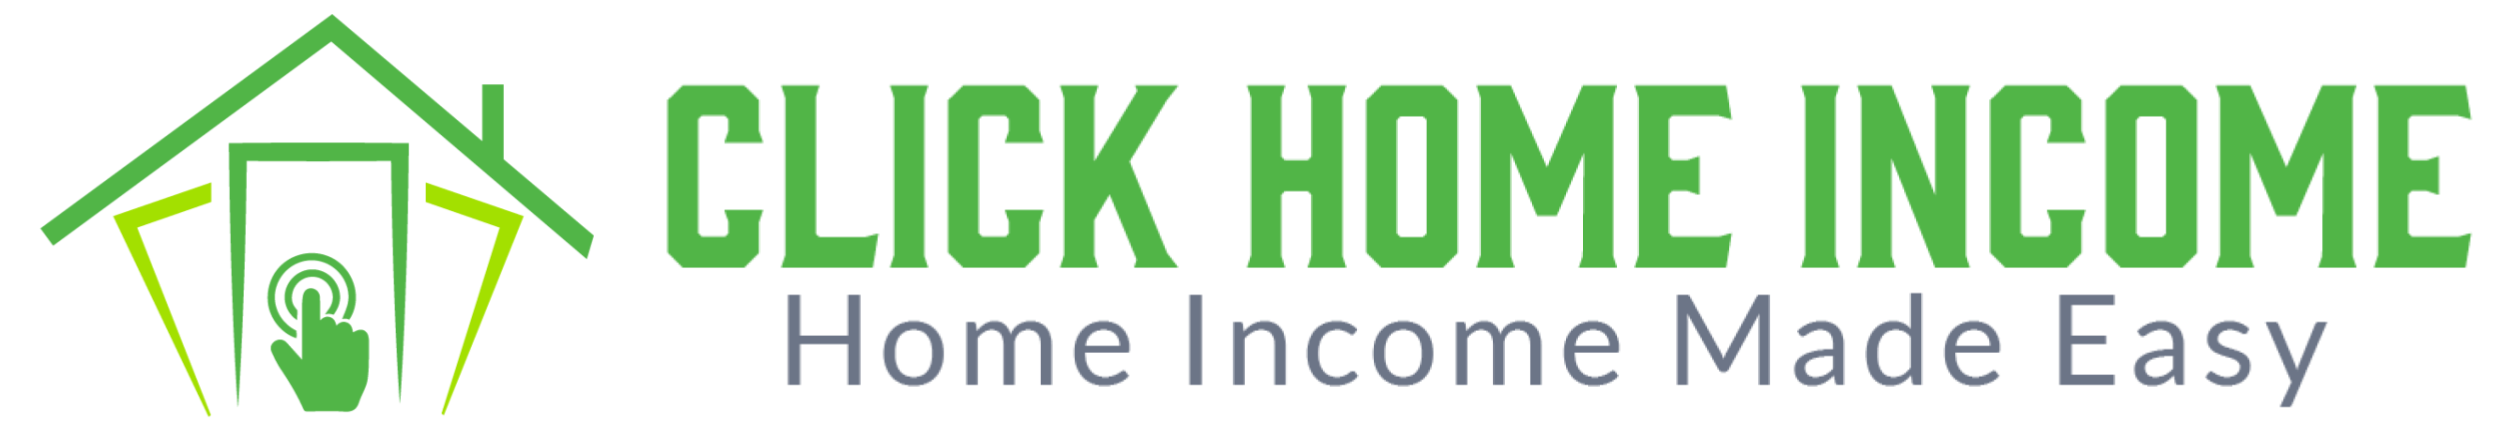 click-home-income-logo